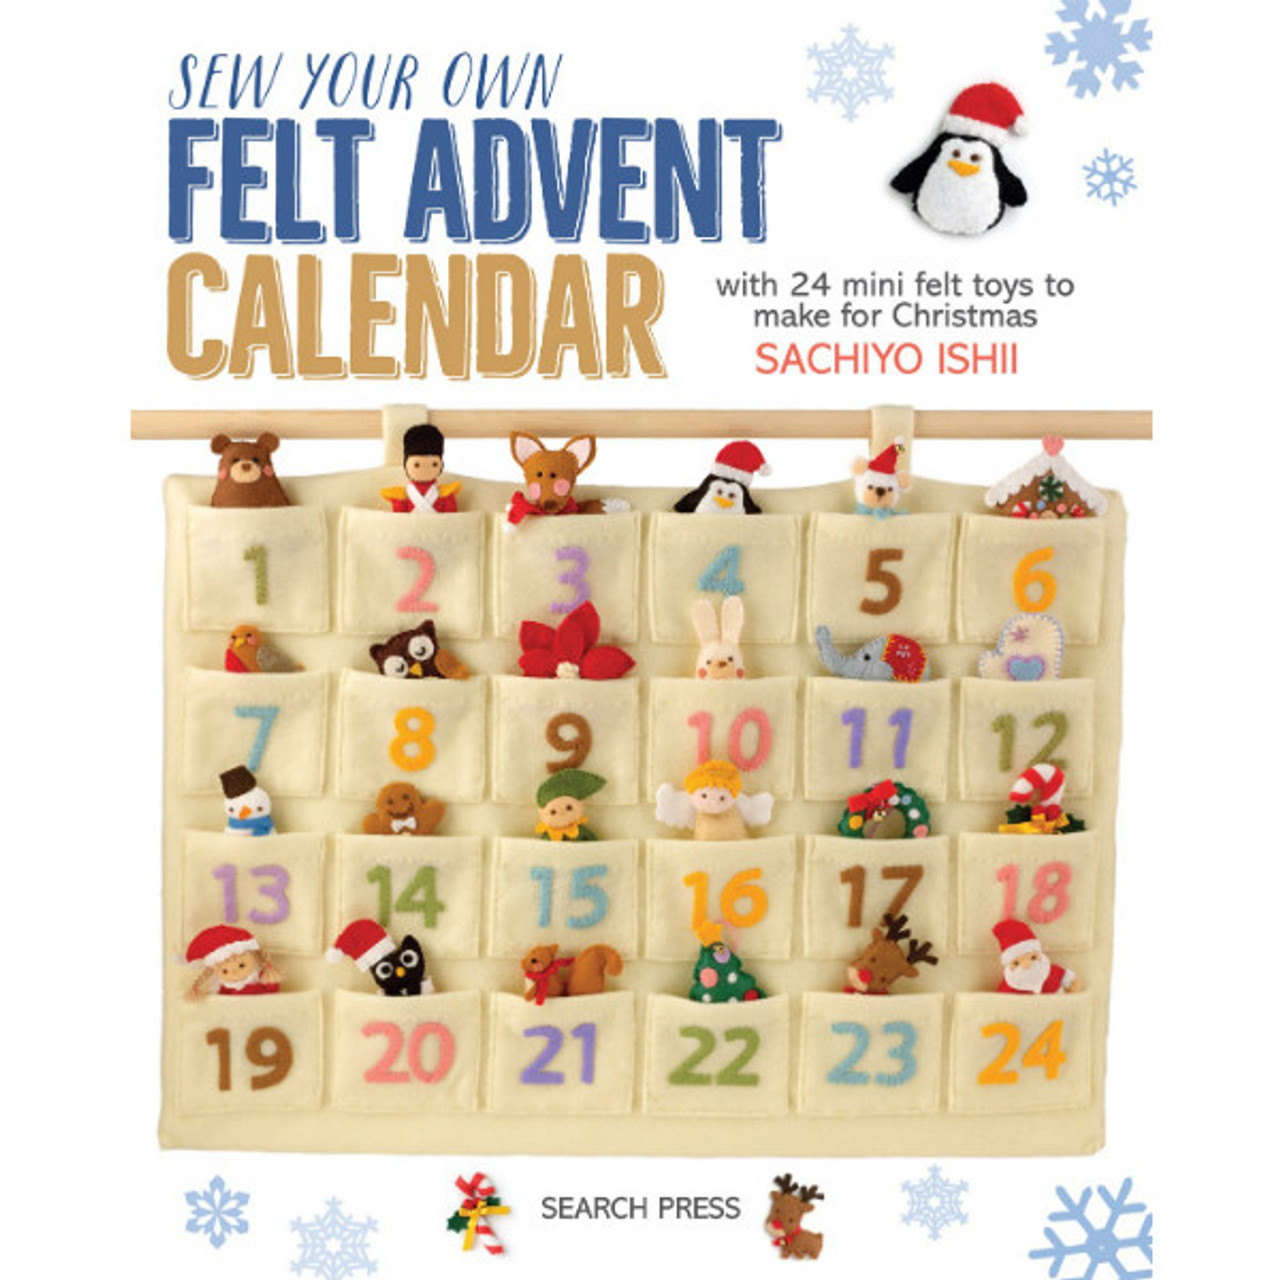 Advent Calendar Craft Kits  Calendar craft, Art and craft kit, Arts and crafts  kits